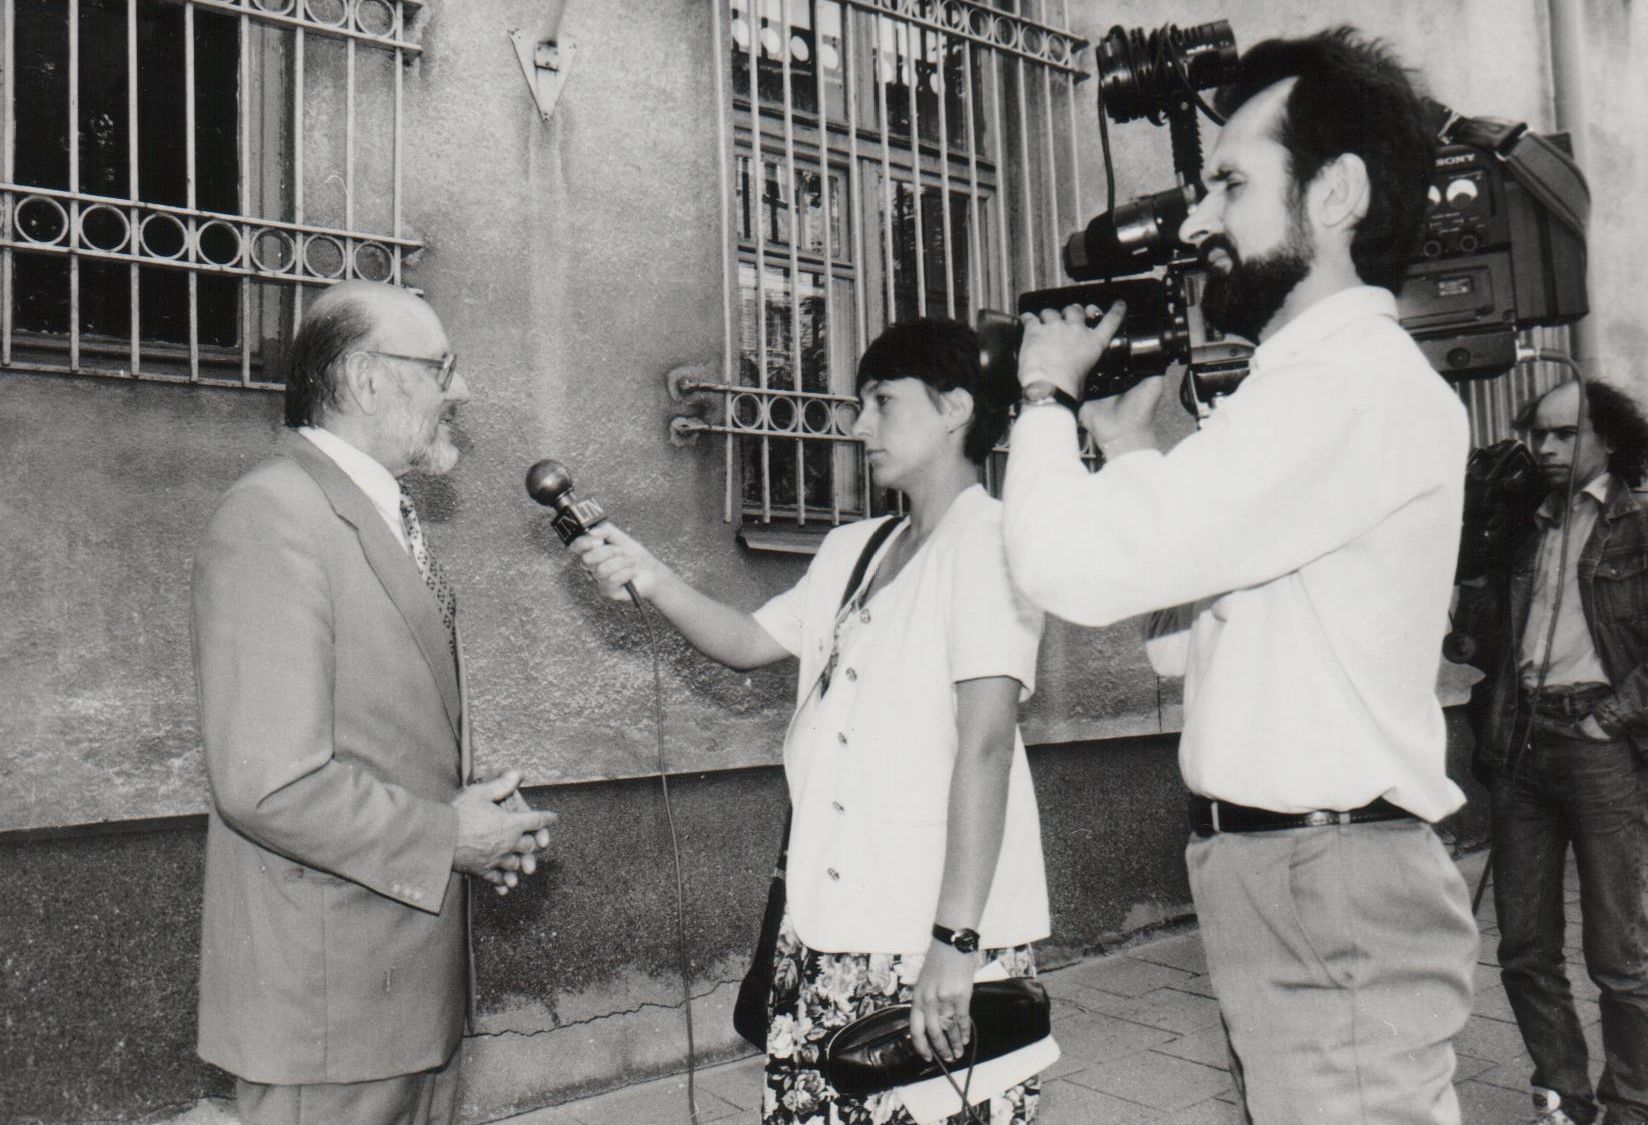 Interviu televizijai apie Ministro Pirmininko lankymąsi archyvuose. 1996 m. birželio 8 d.